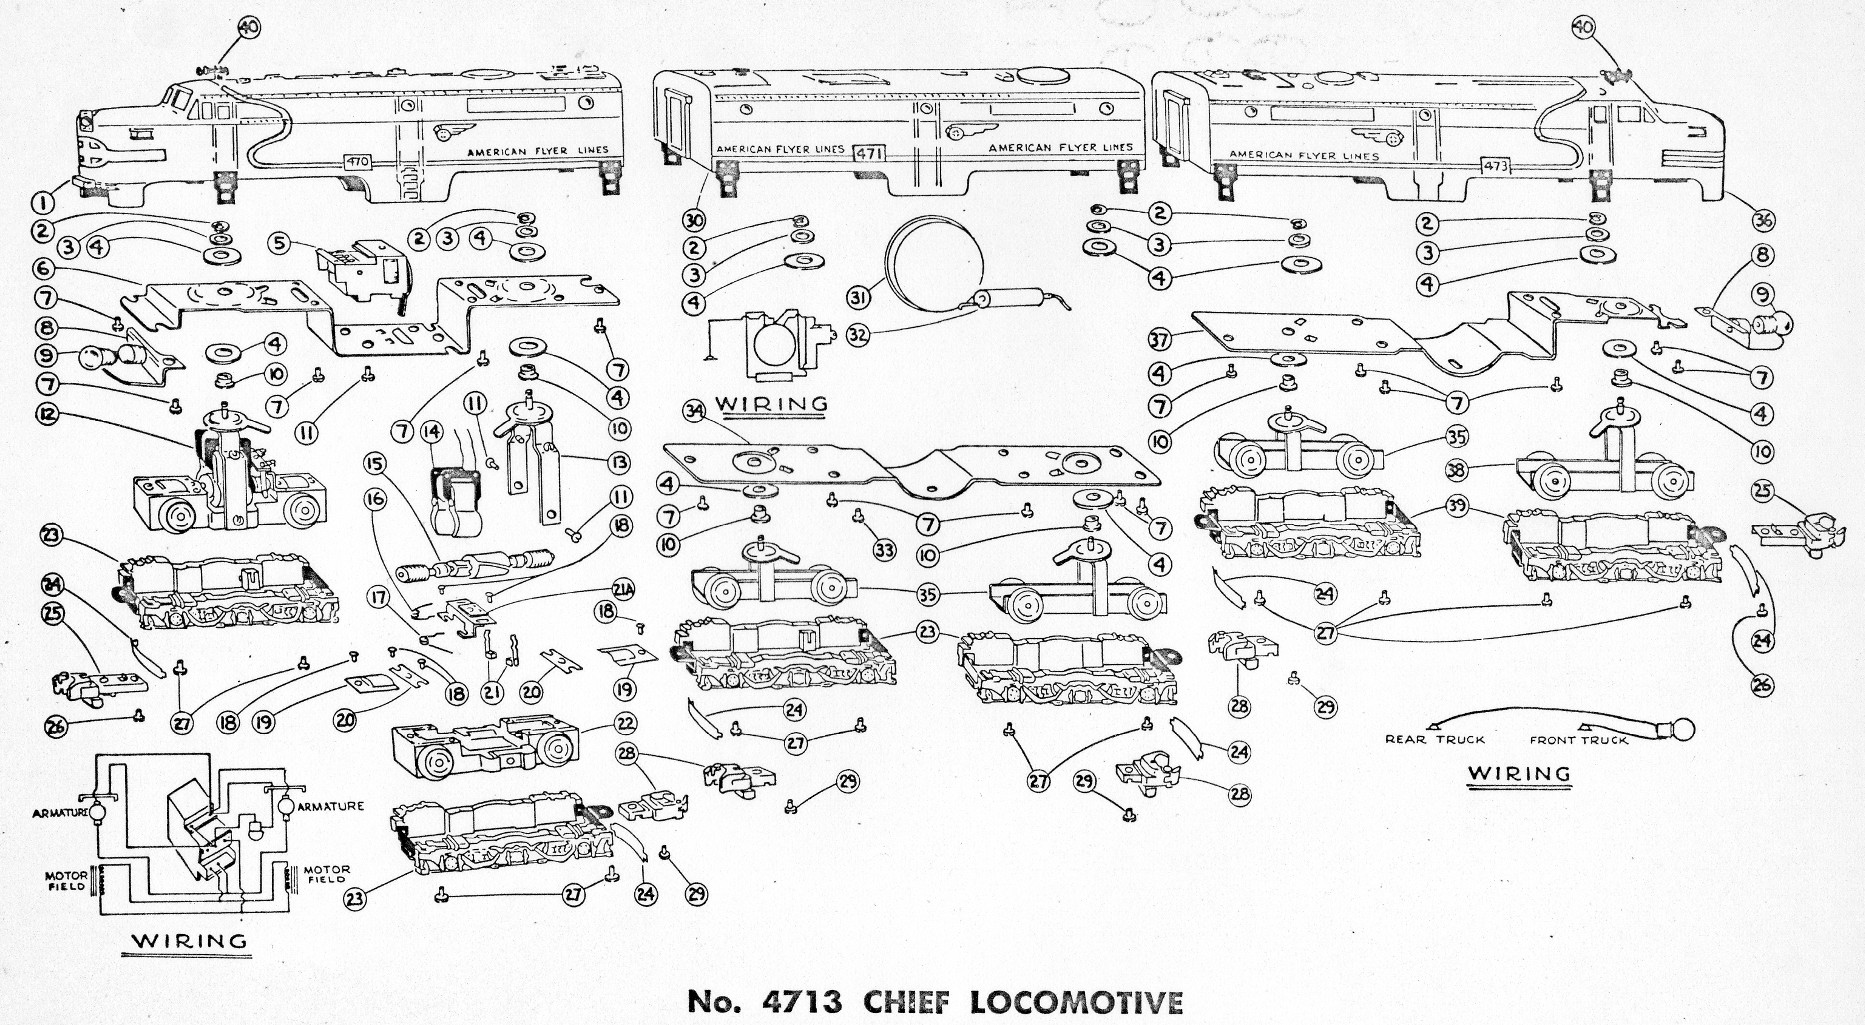 American Flyer Locomotive 4713 Parts List & Diagram - Page 2